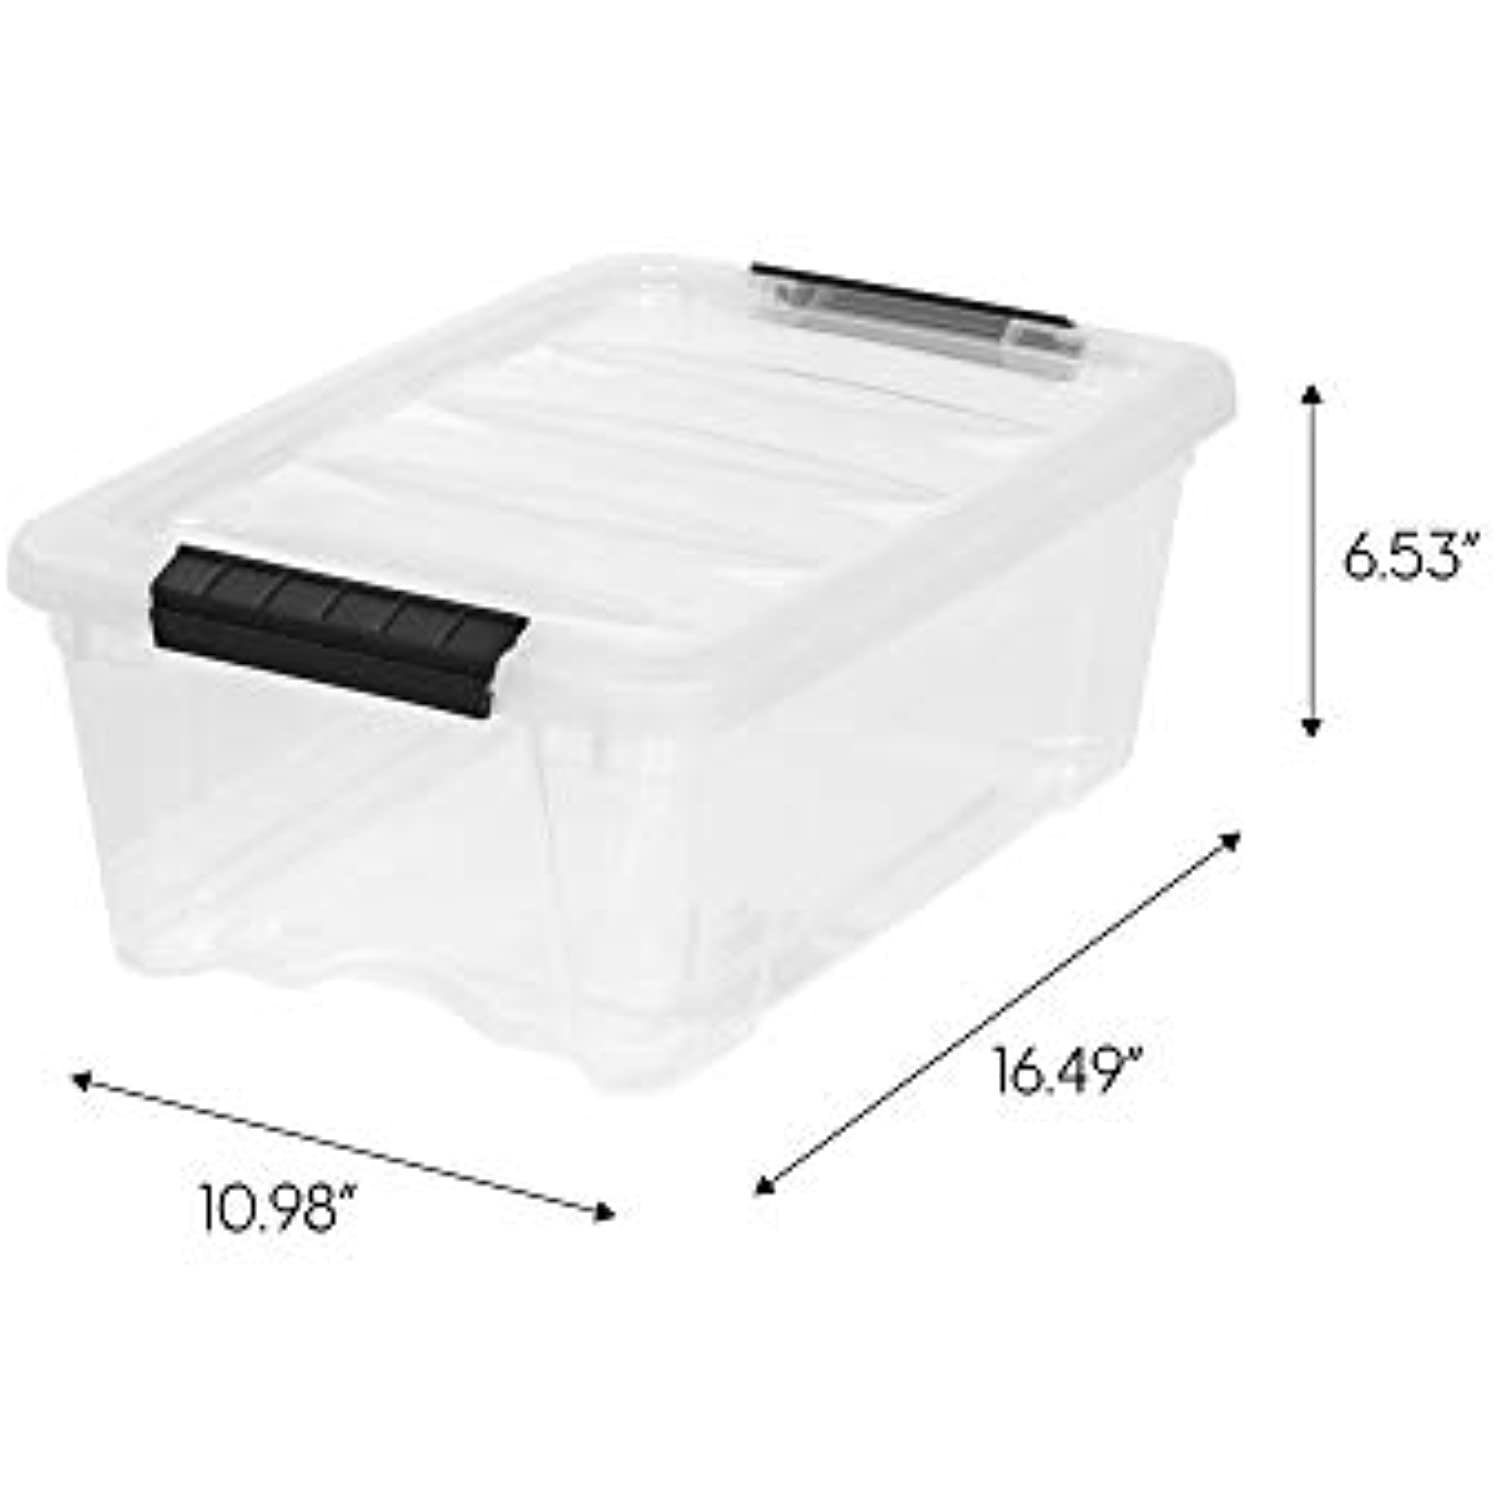 Details about   Iris Buckle-Up Storage Set 12.9 Quart 4PK Clear Plastic Storage Boxes with Lids 